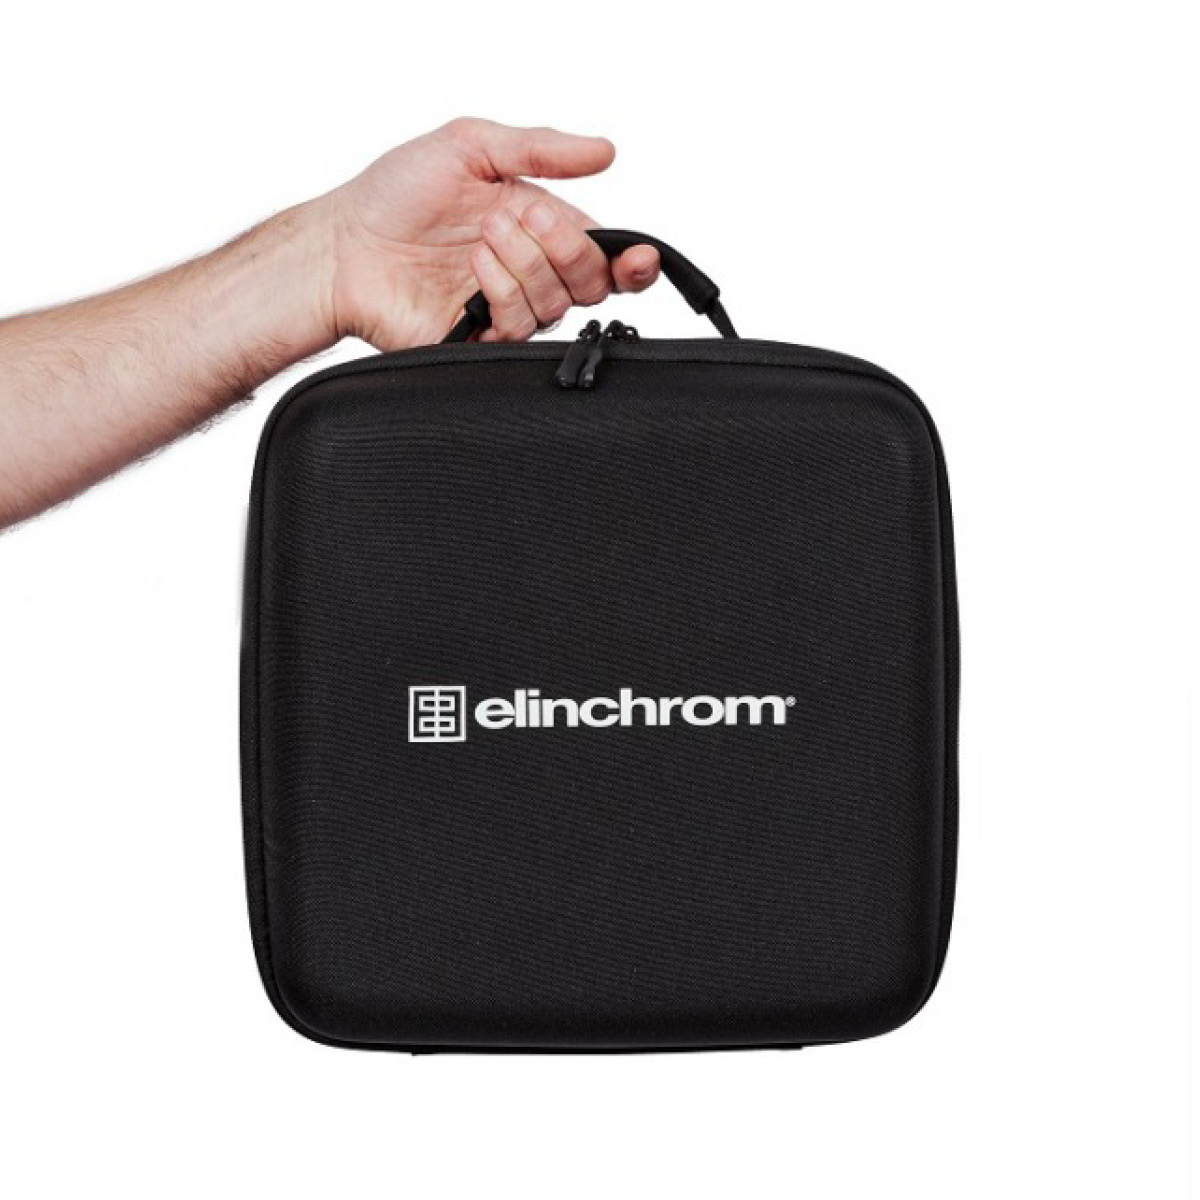 Elinchrom One Flash Kit